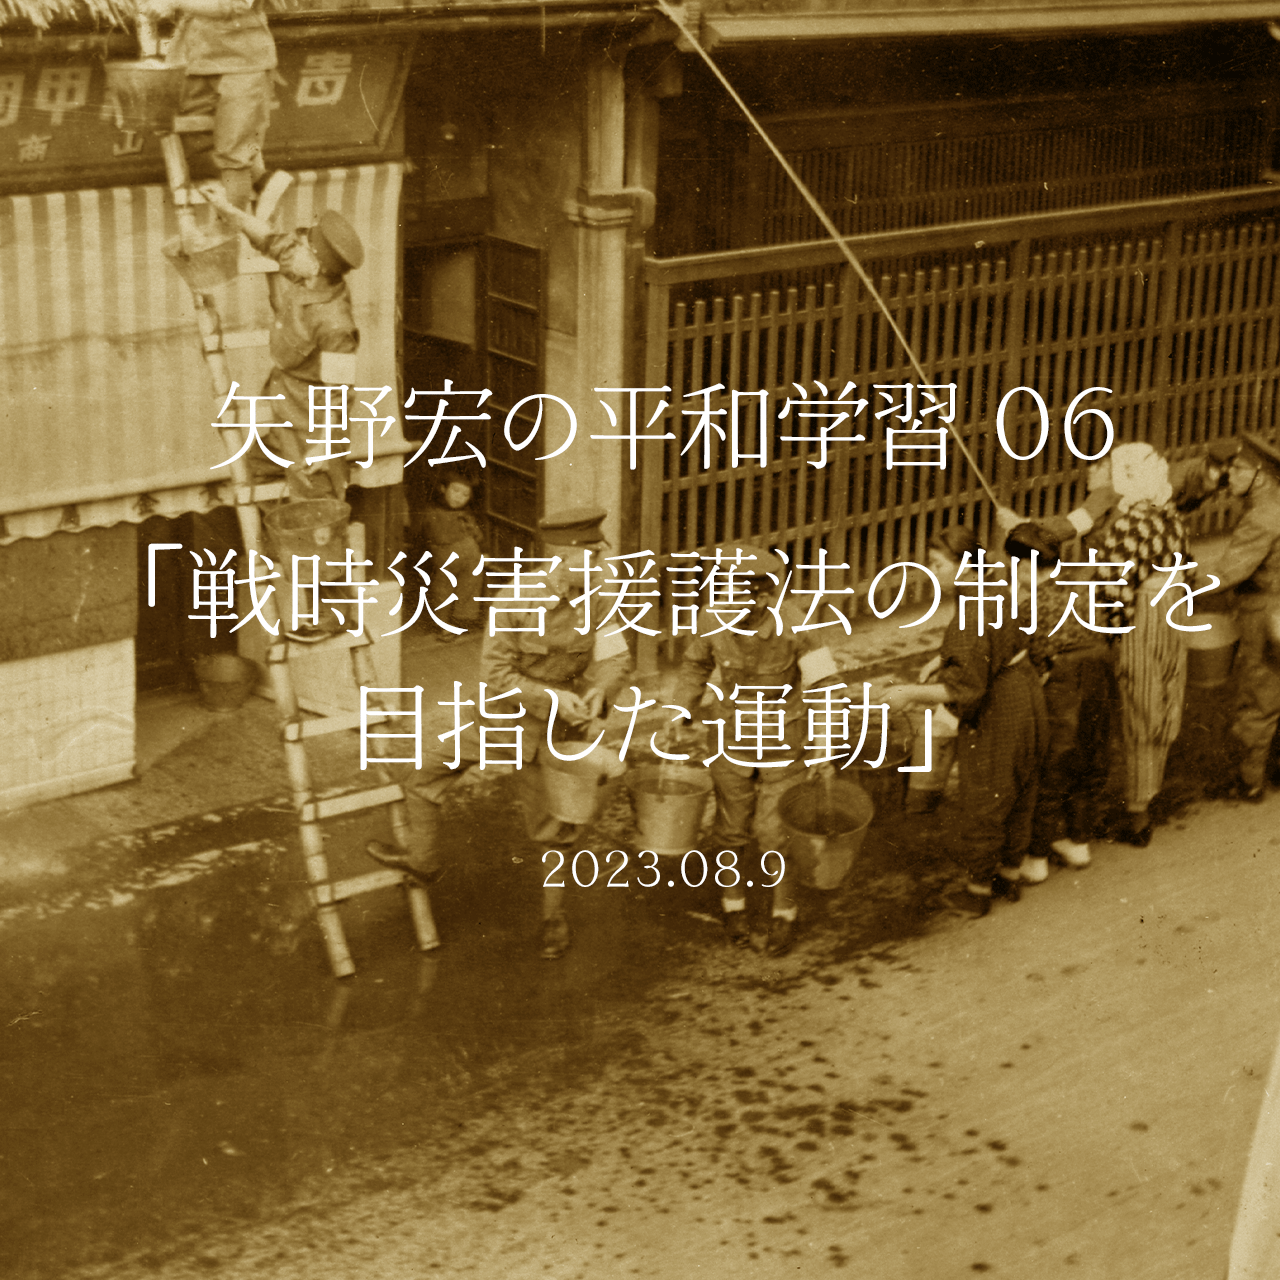 矢野宏の平和学習 06「戦時災害援護法の制定を目指した運動」